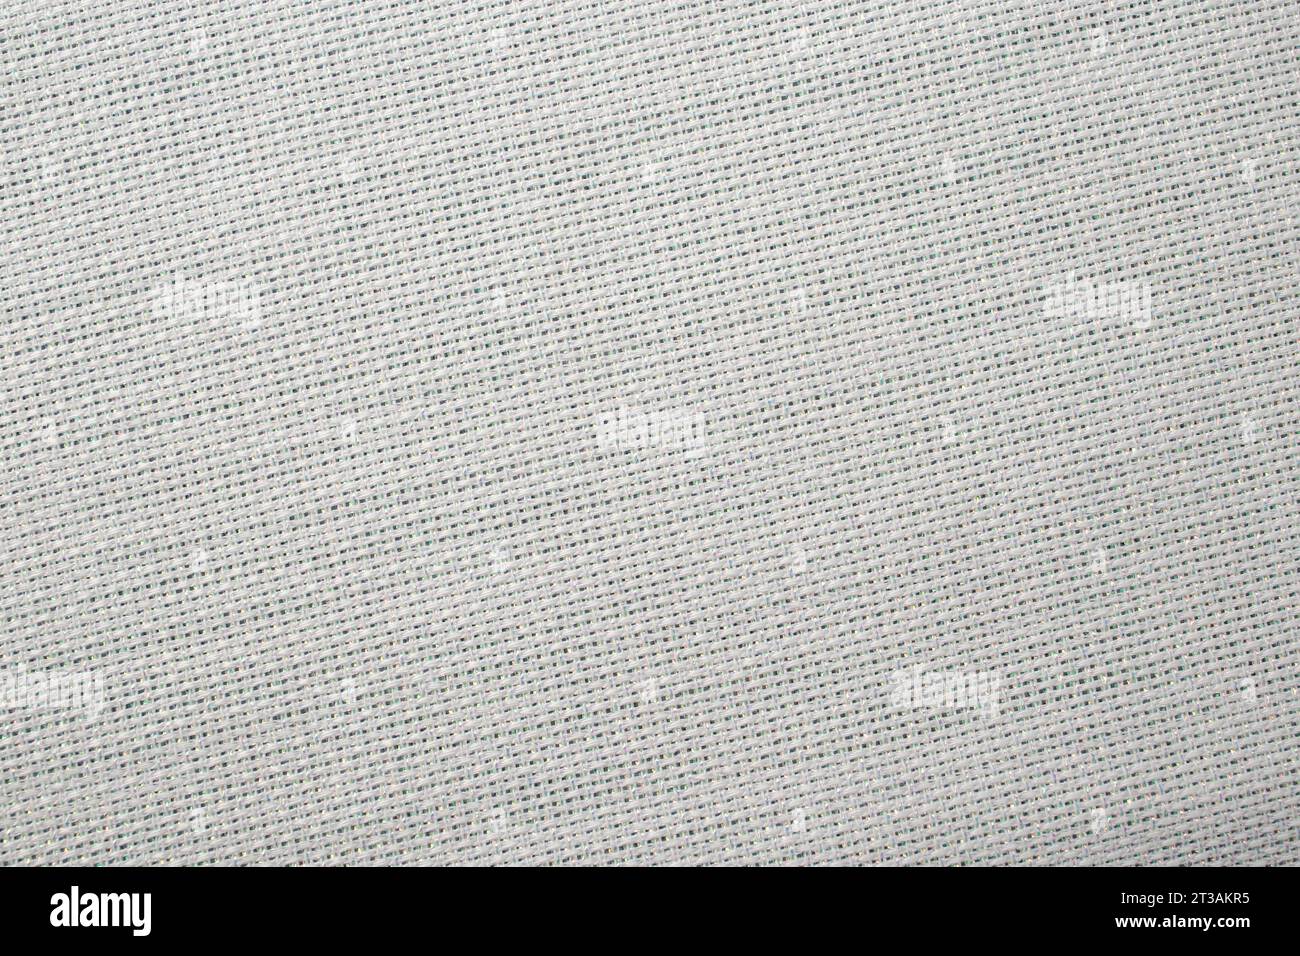 structure de toile blanche avec insertions de fil métallique, fond vide de gros plan Banque D'Images